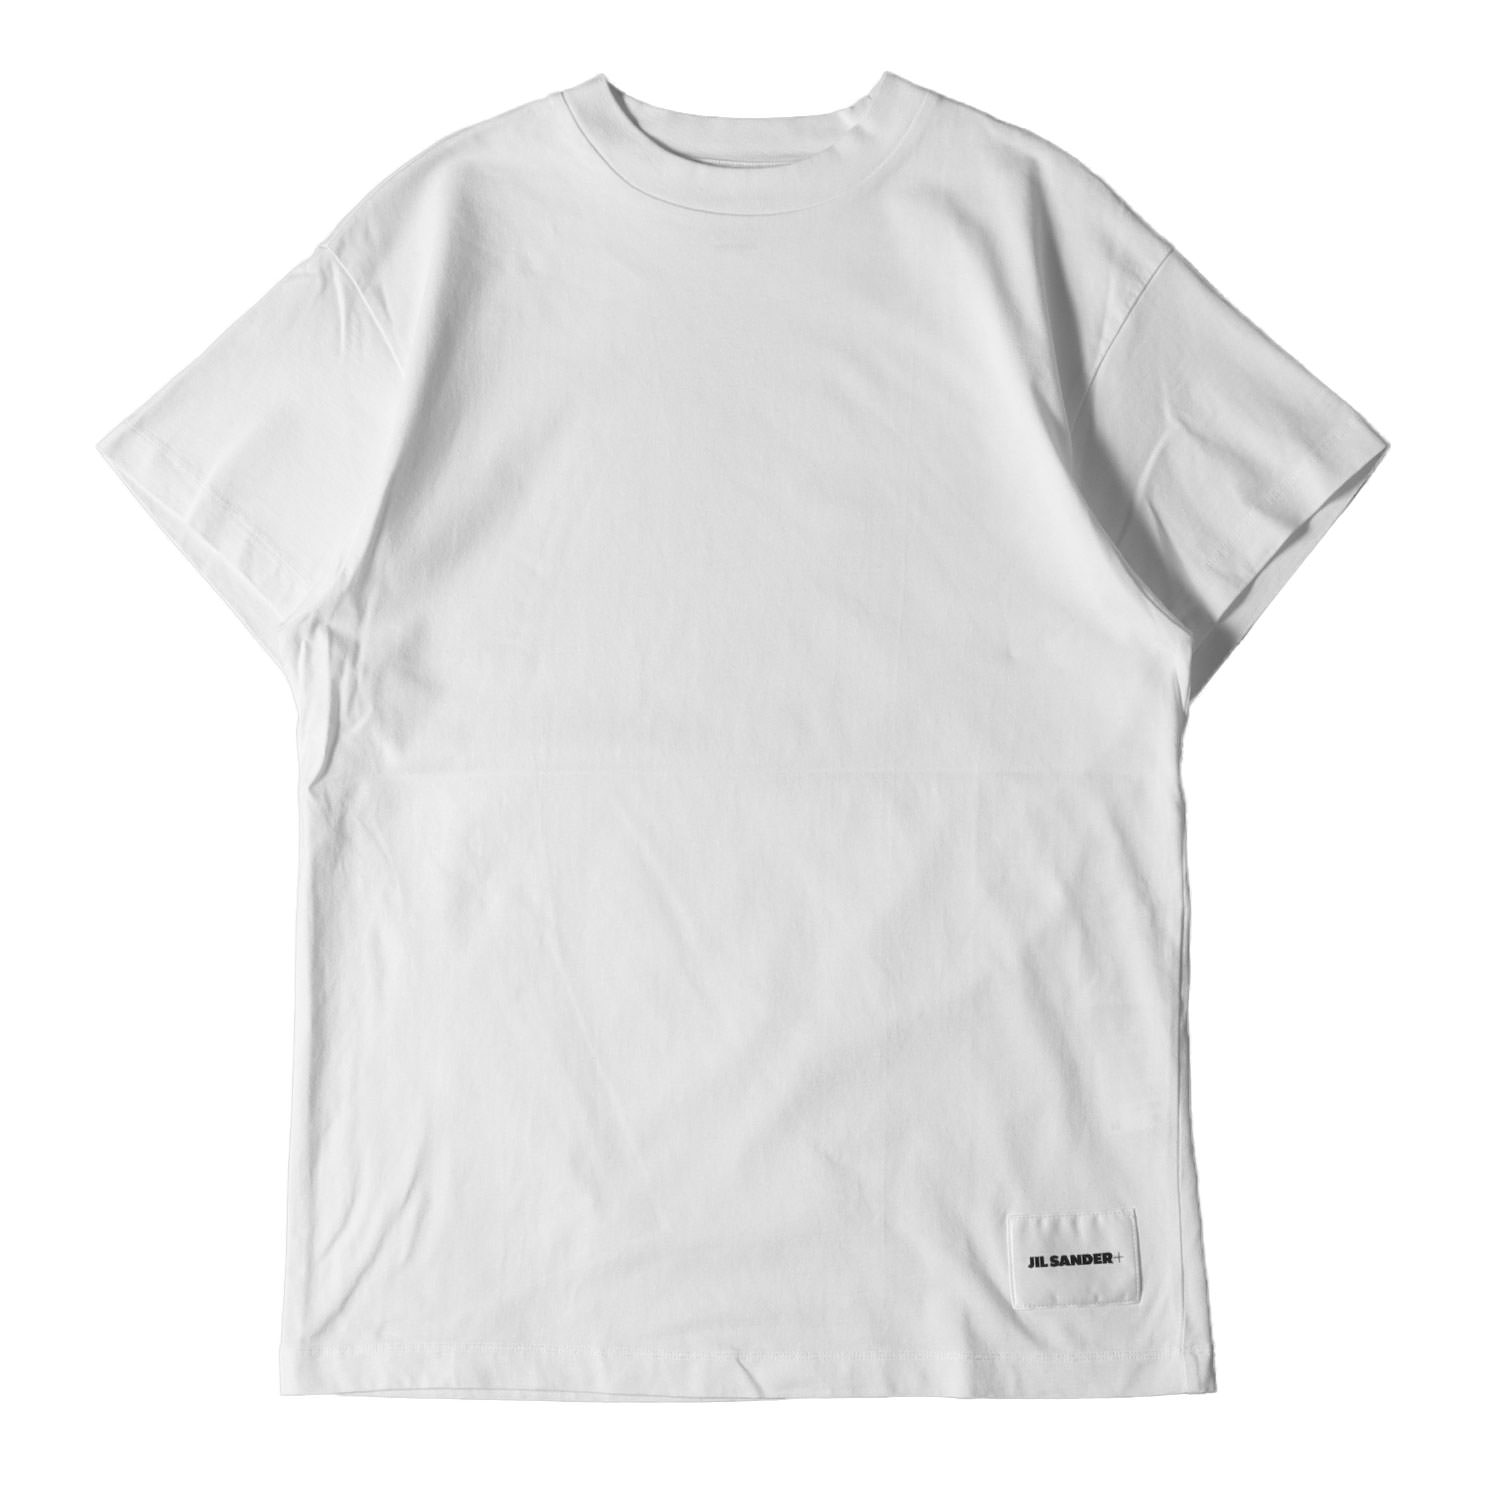 楽天市場 ジル・サンダー Tシャツ サイズ:S 裾 ロゴ